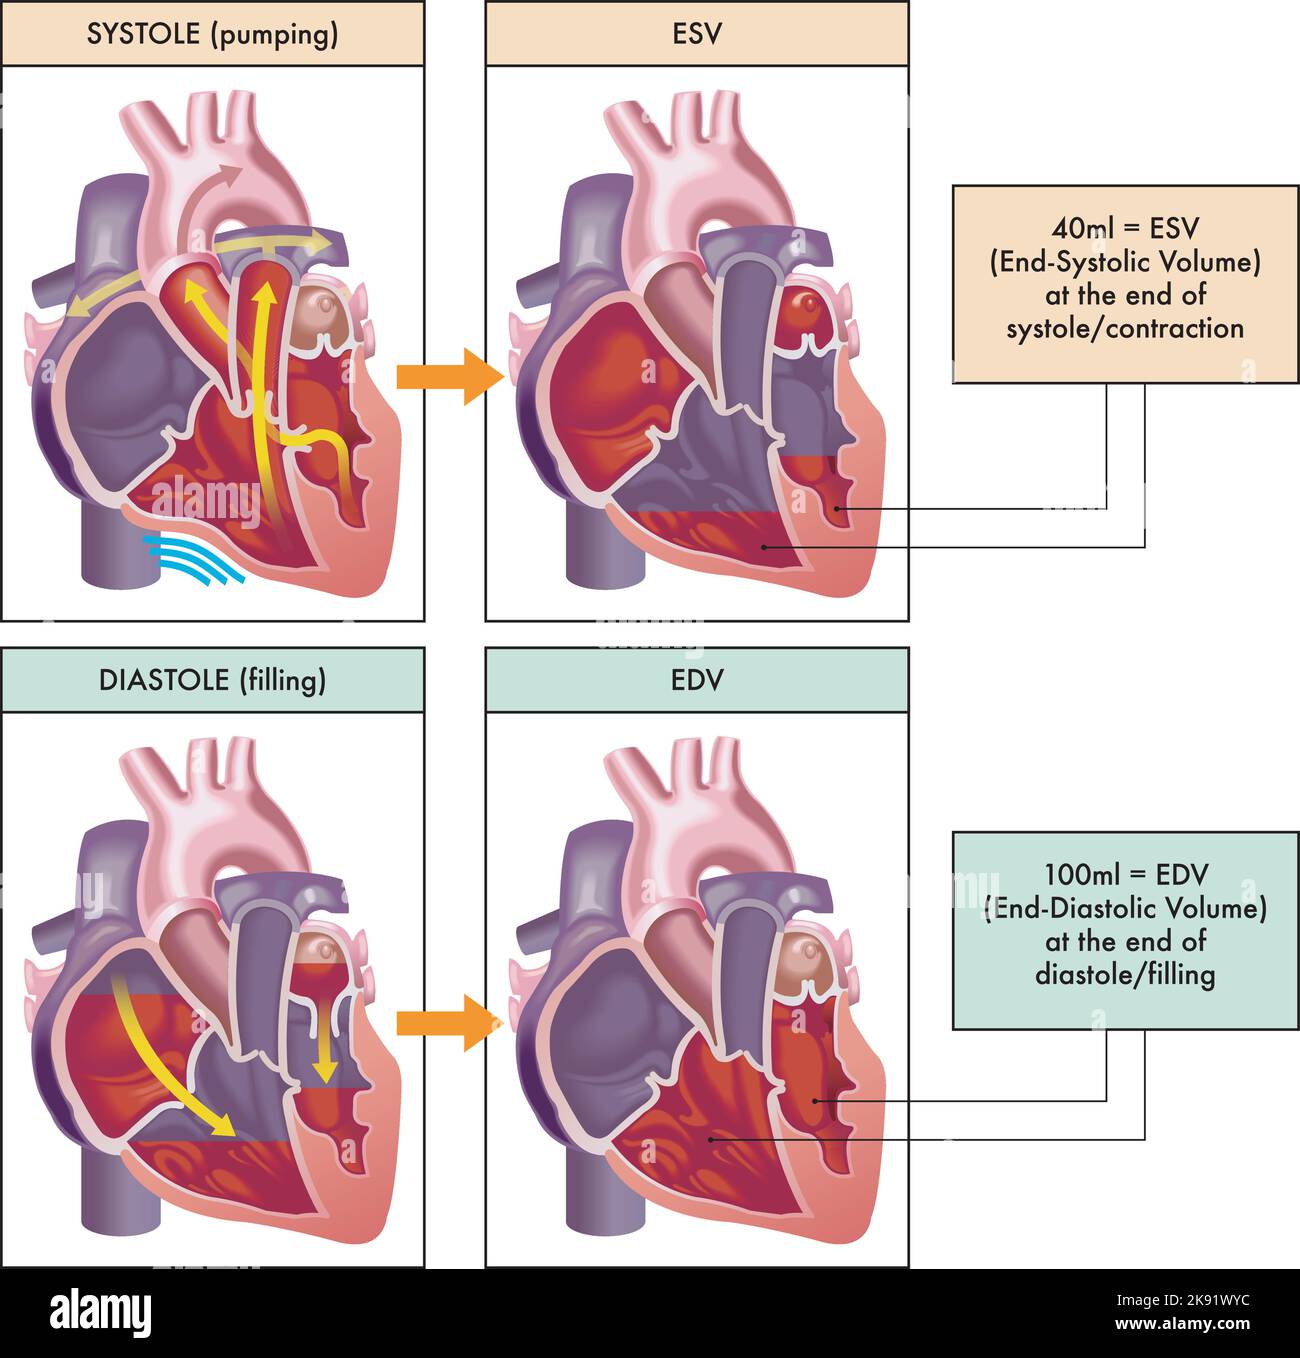 Illustration médicale des deux phases principales du cycle cardiaque, systole et diastole, avec annotations. Illustration de Vecteur